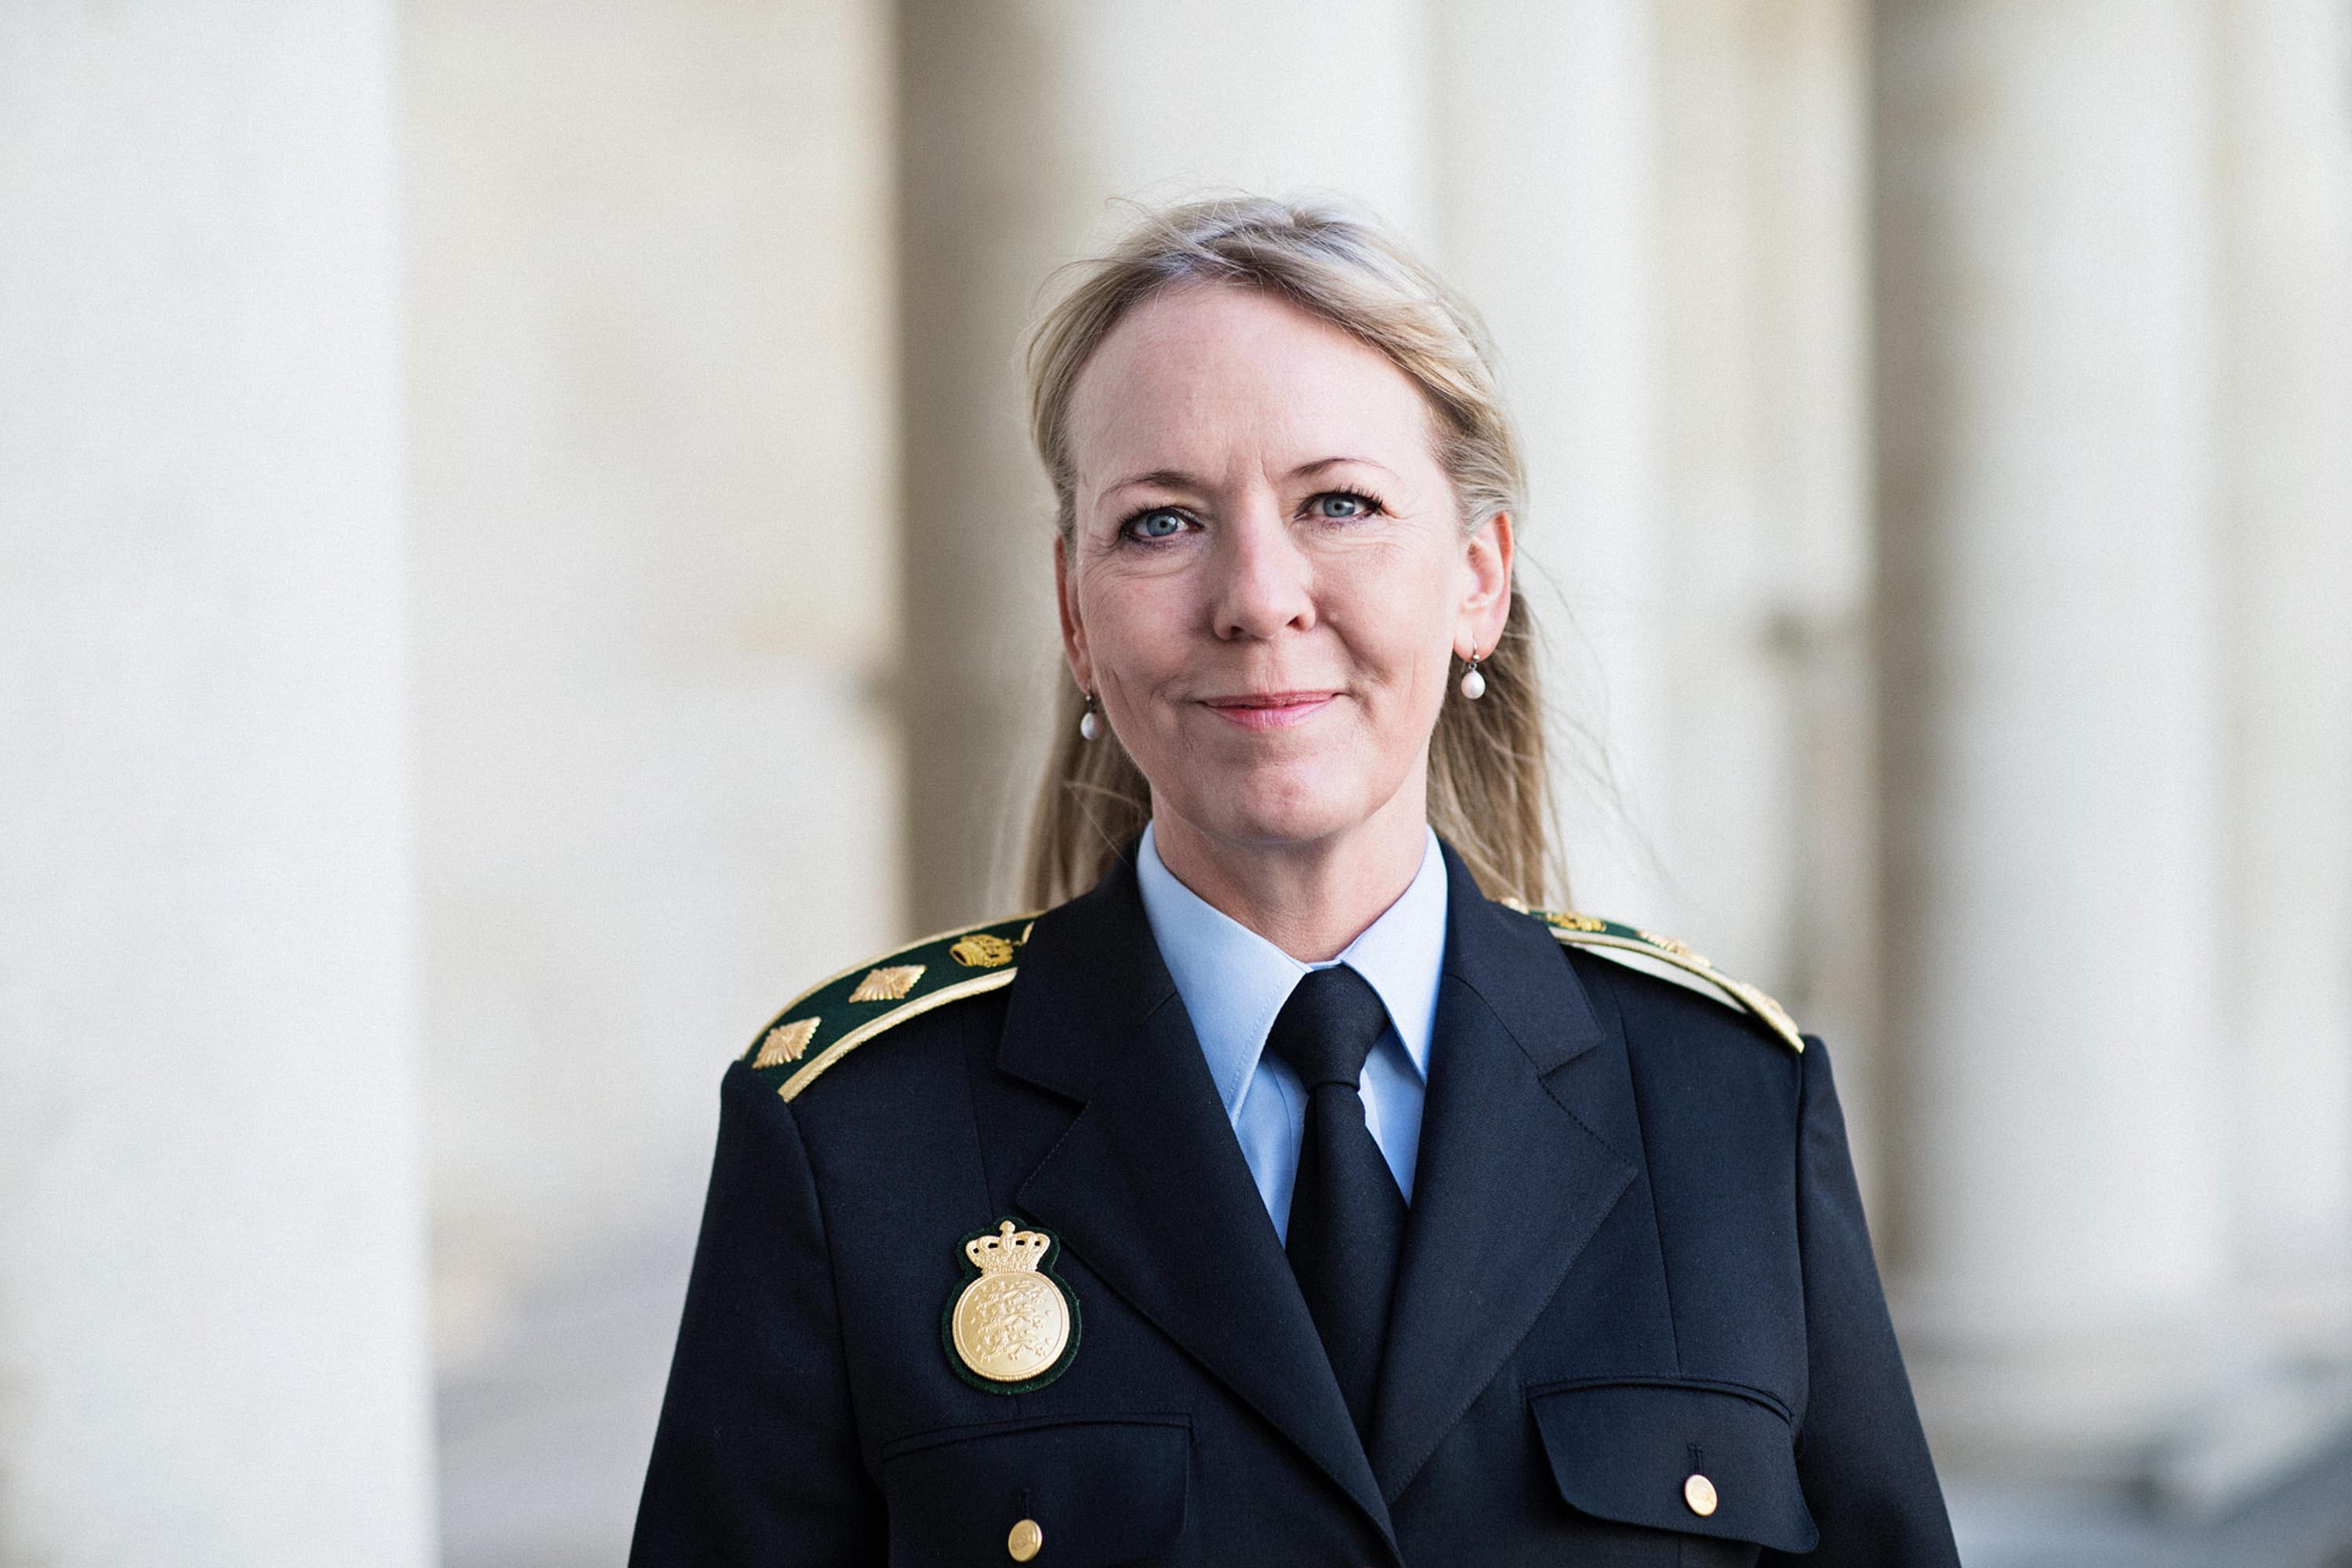 Politidirektør Anne Marie Roum Svendsen, Nordjyllands Politi